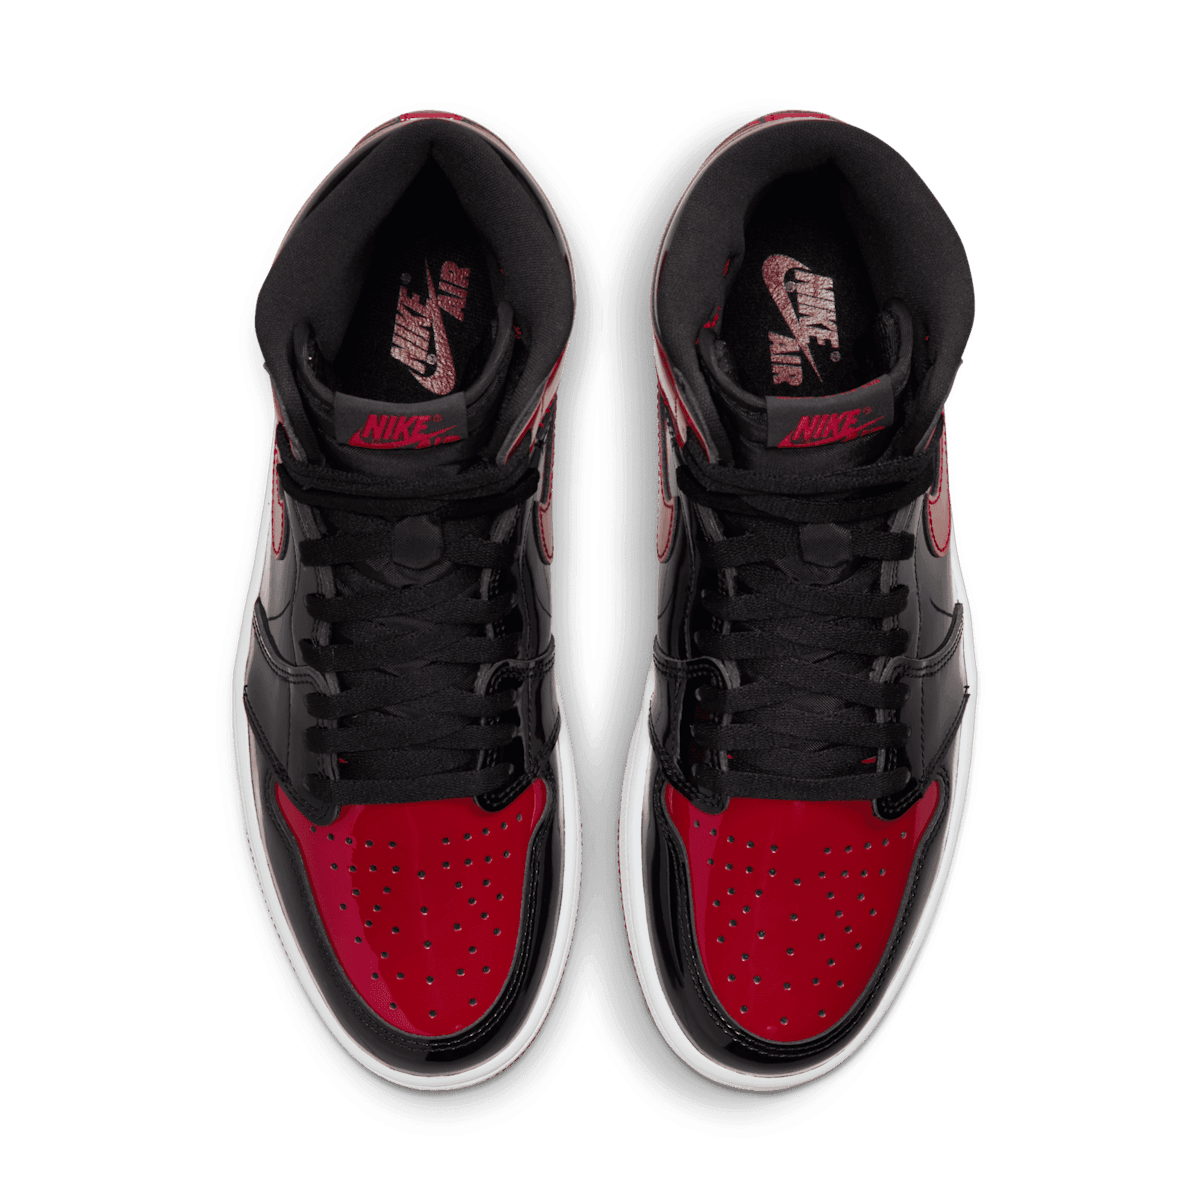 Air Jordan 1 High Patent Bred - 555088-063 Raffles and Release Date